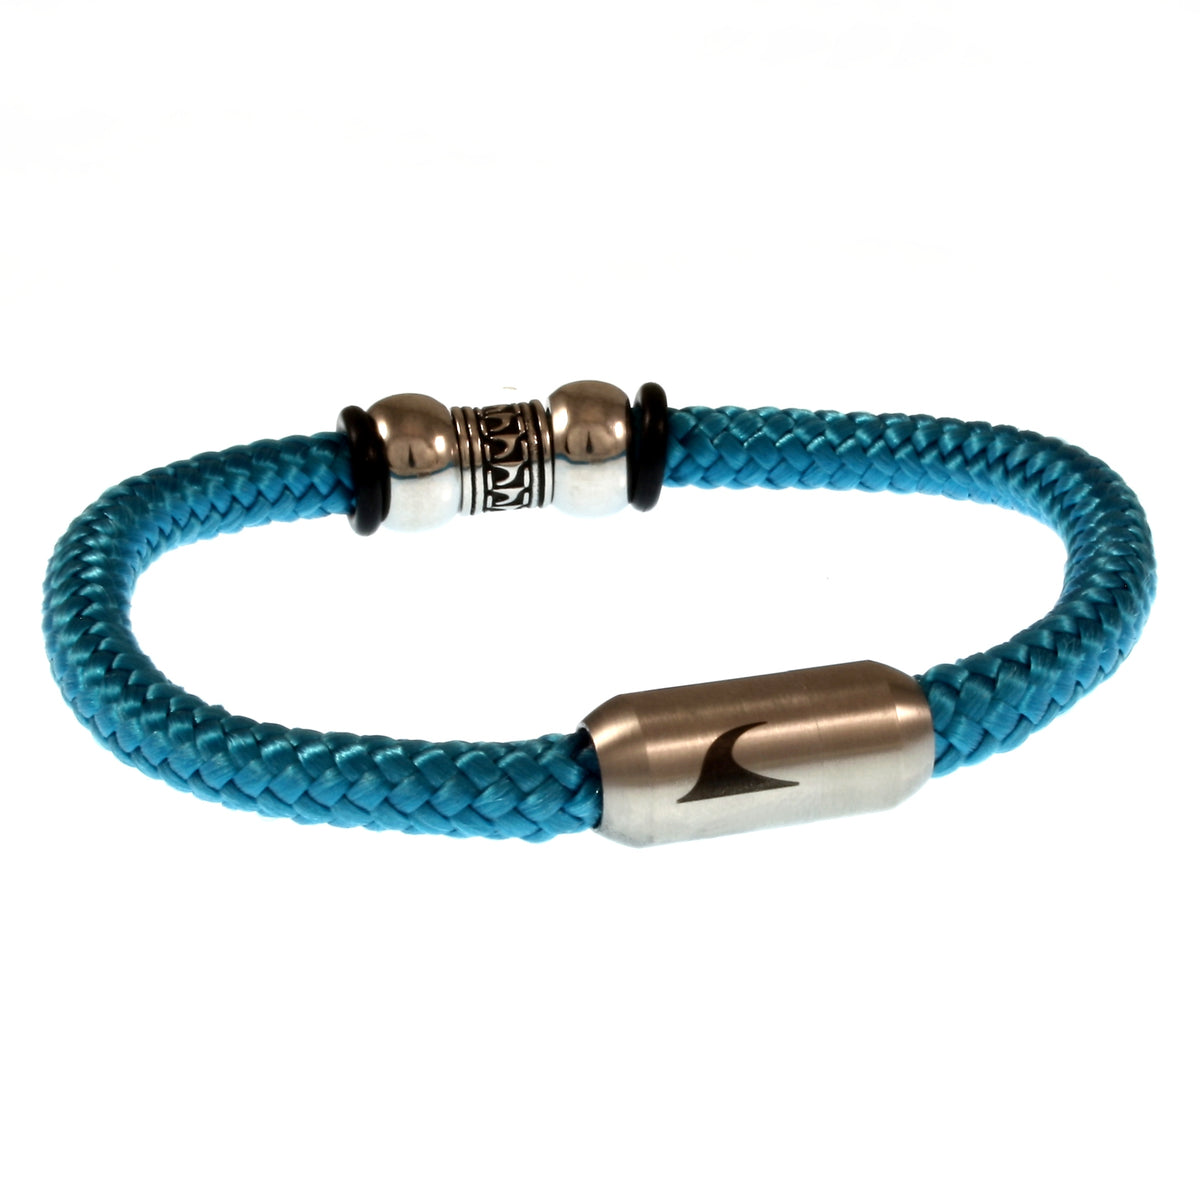 Herren-Segeltau-Armband-atoll-blau-geflochten-Edelstahlverschluss-hinten-wavepirate-shop-st